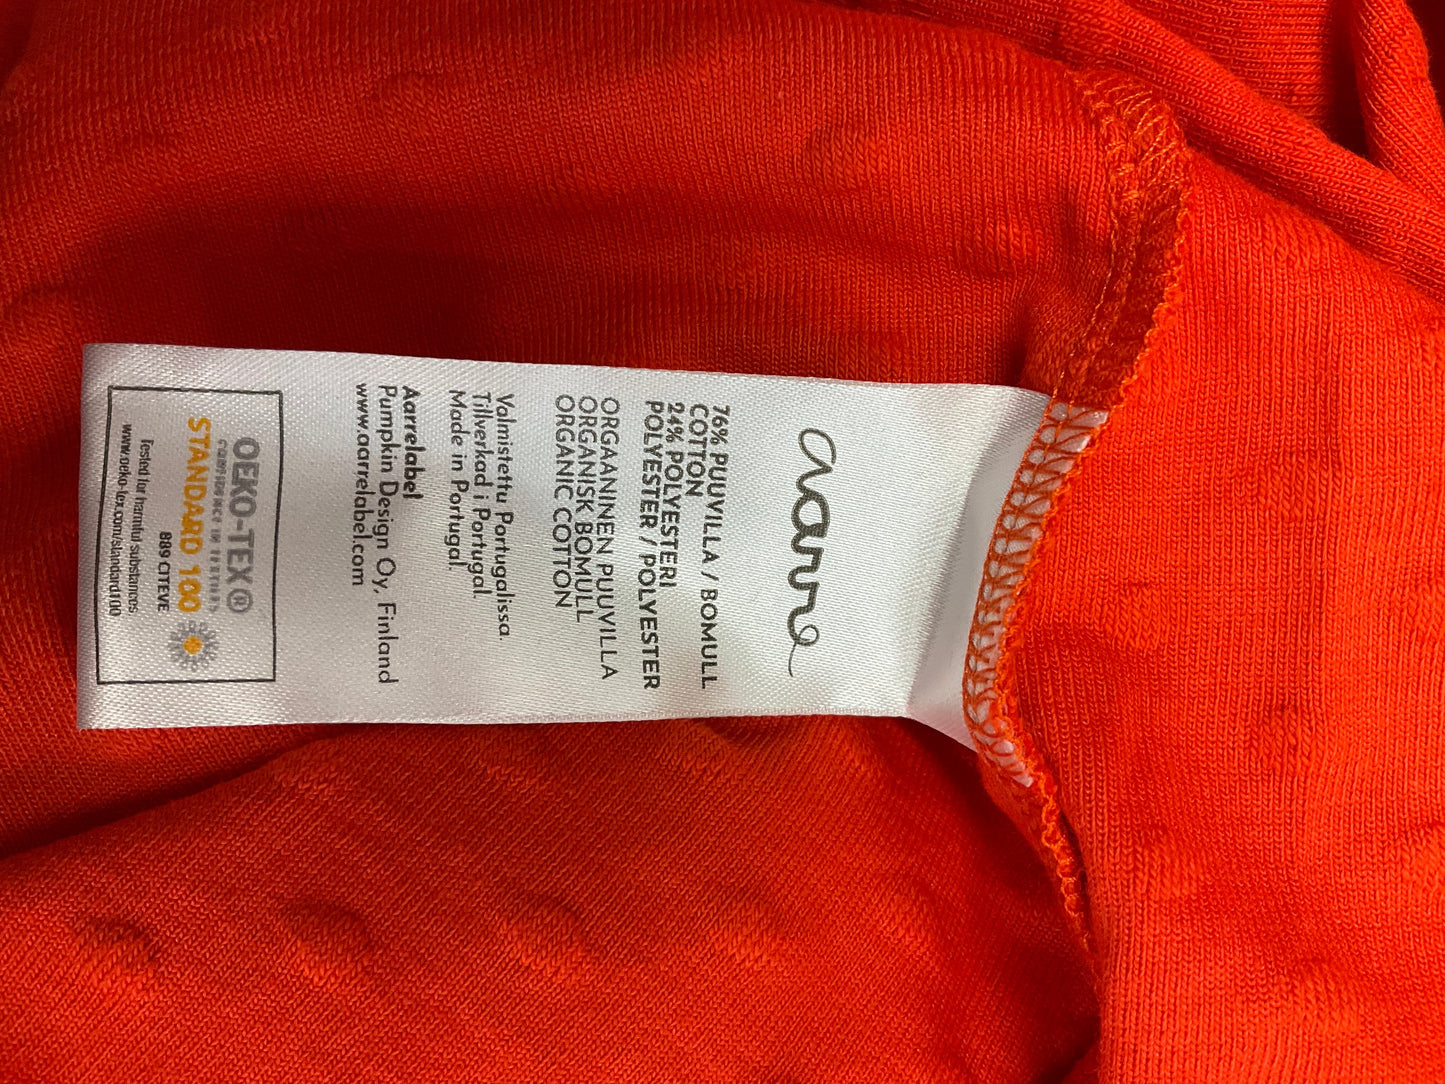 Orange Skirt Midi Clothes Mentor, Size 8